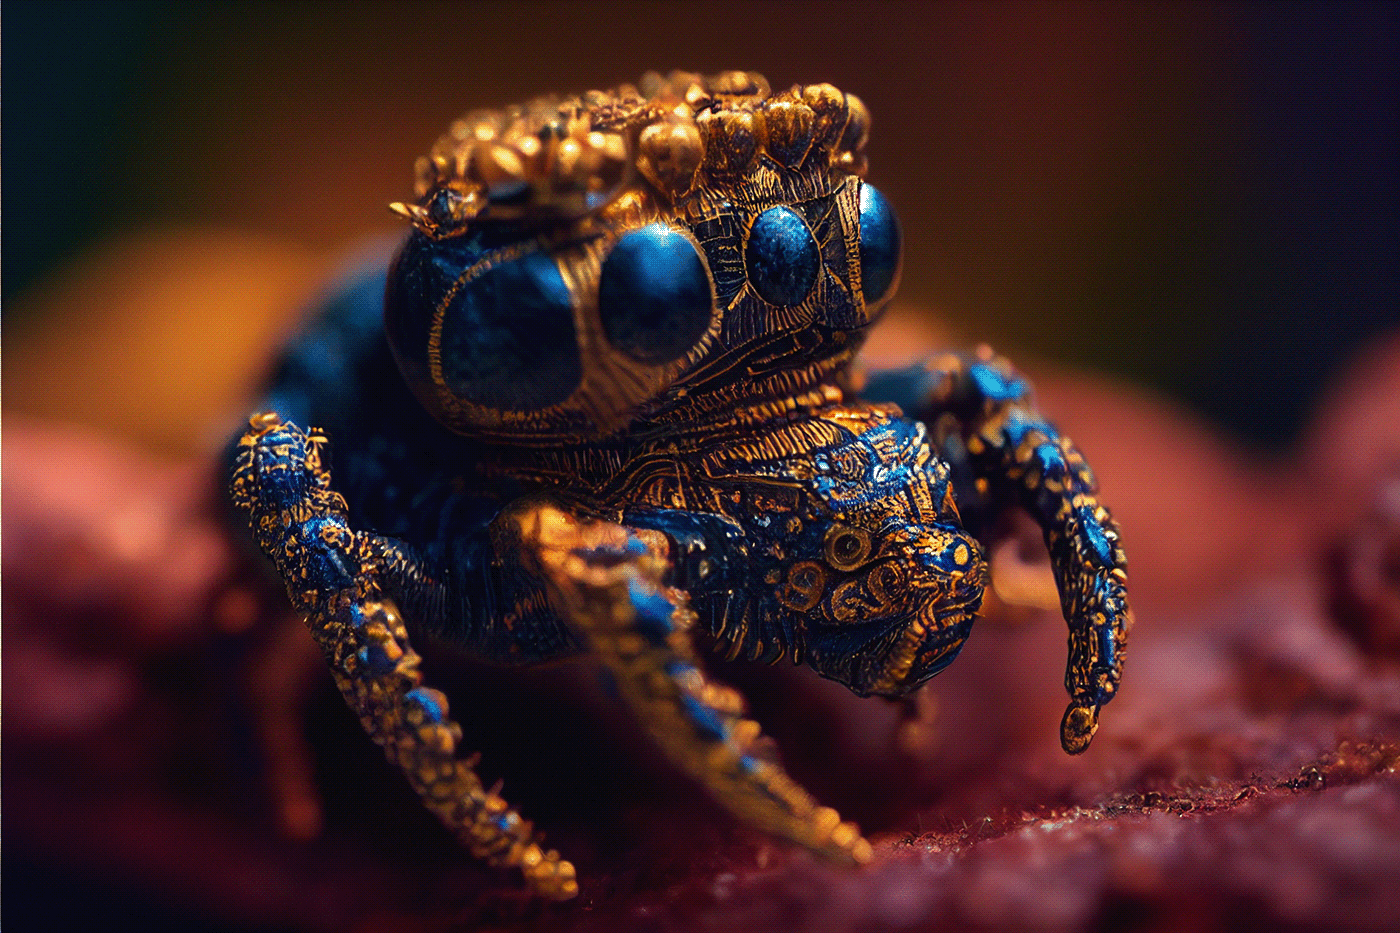 Arachnid details golden insect intricate Macro Photography Nature phidippus regius Sharp spider